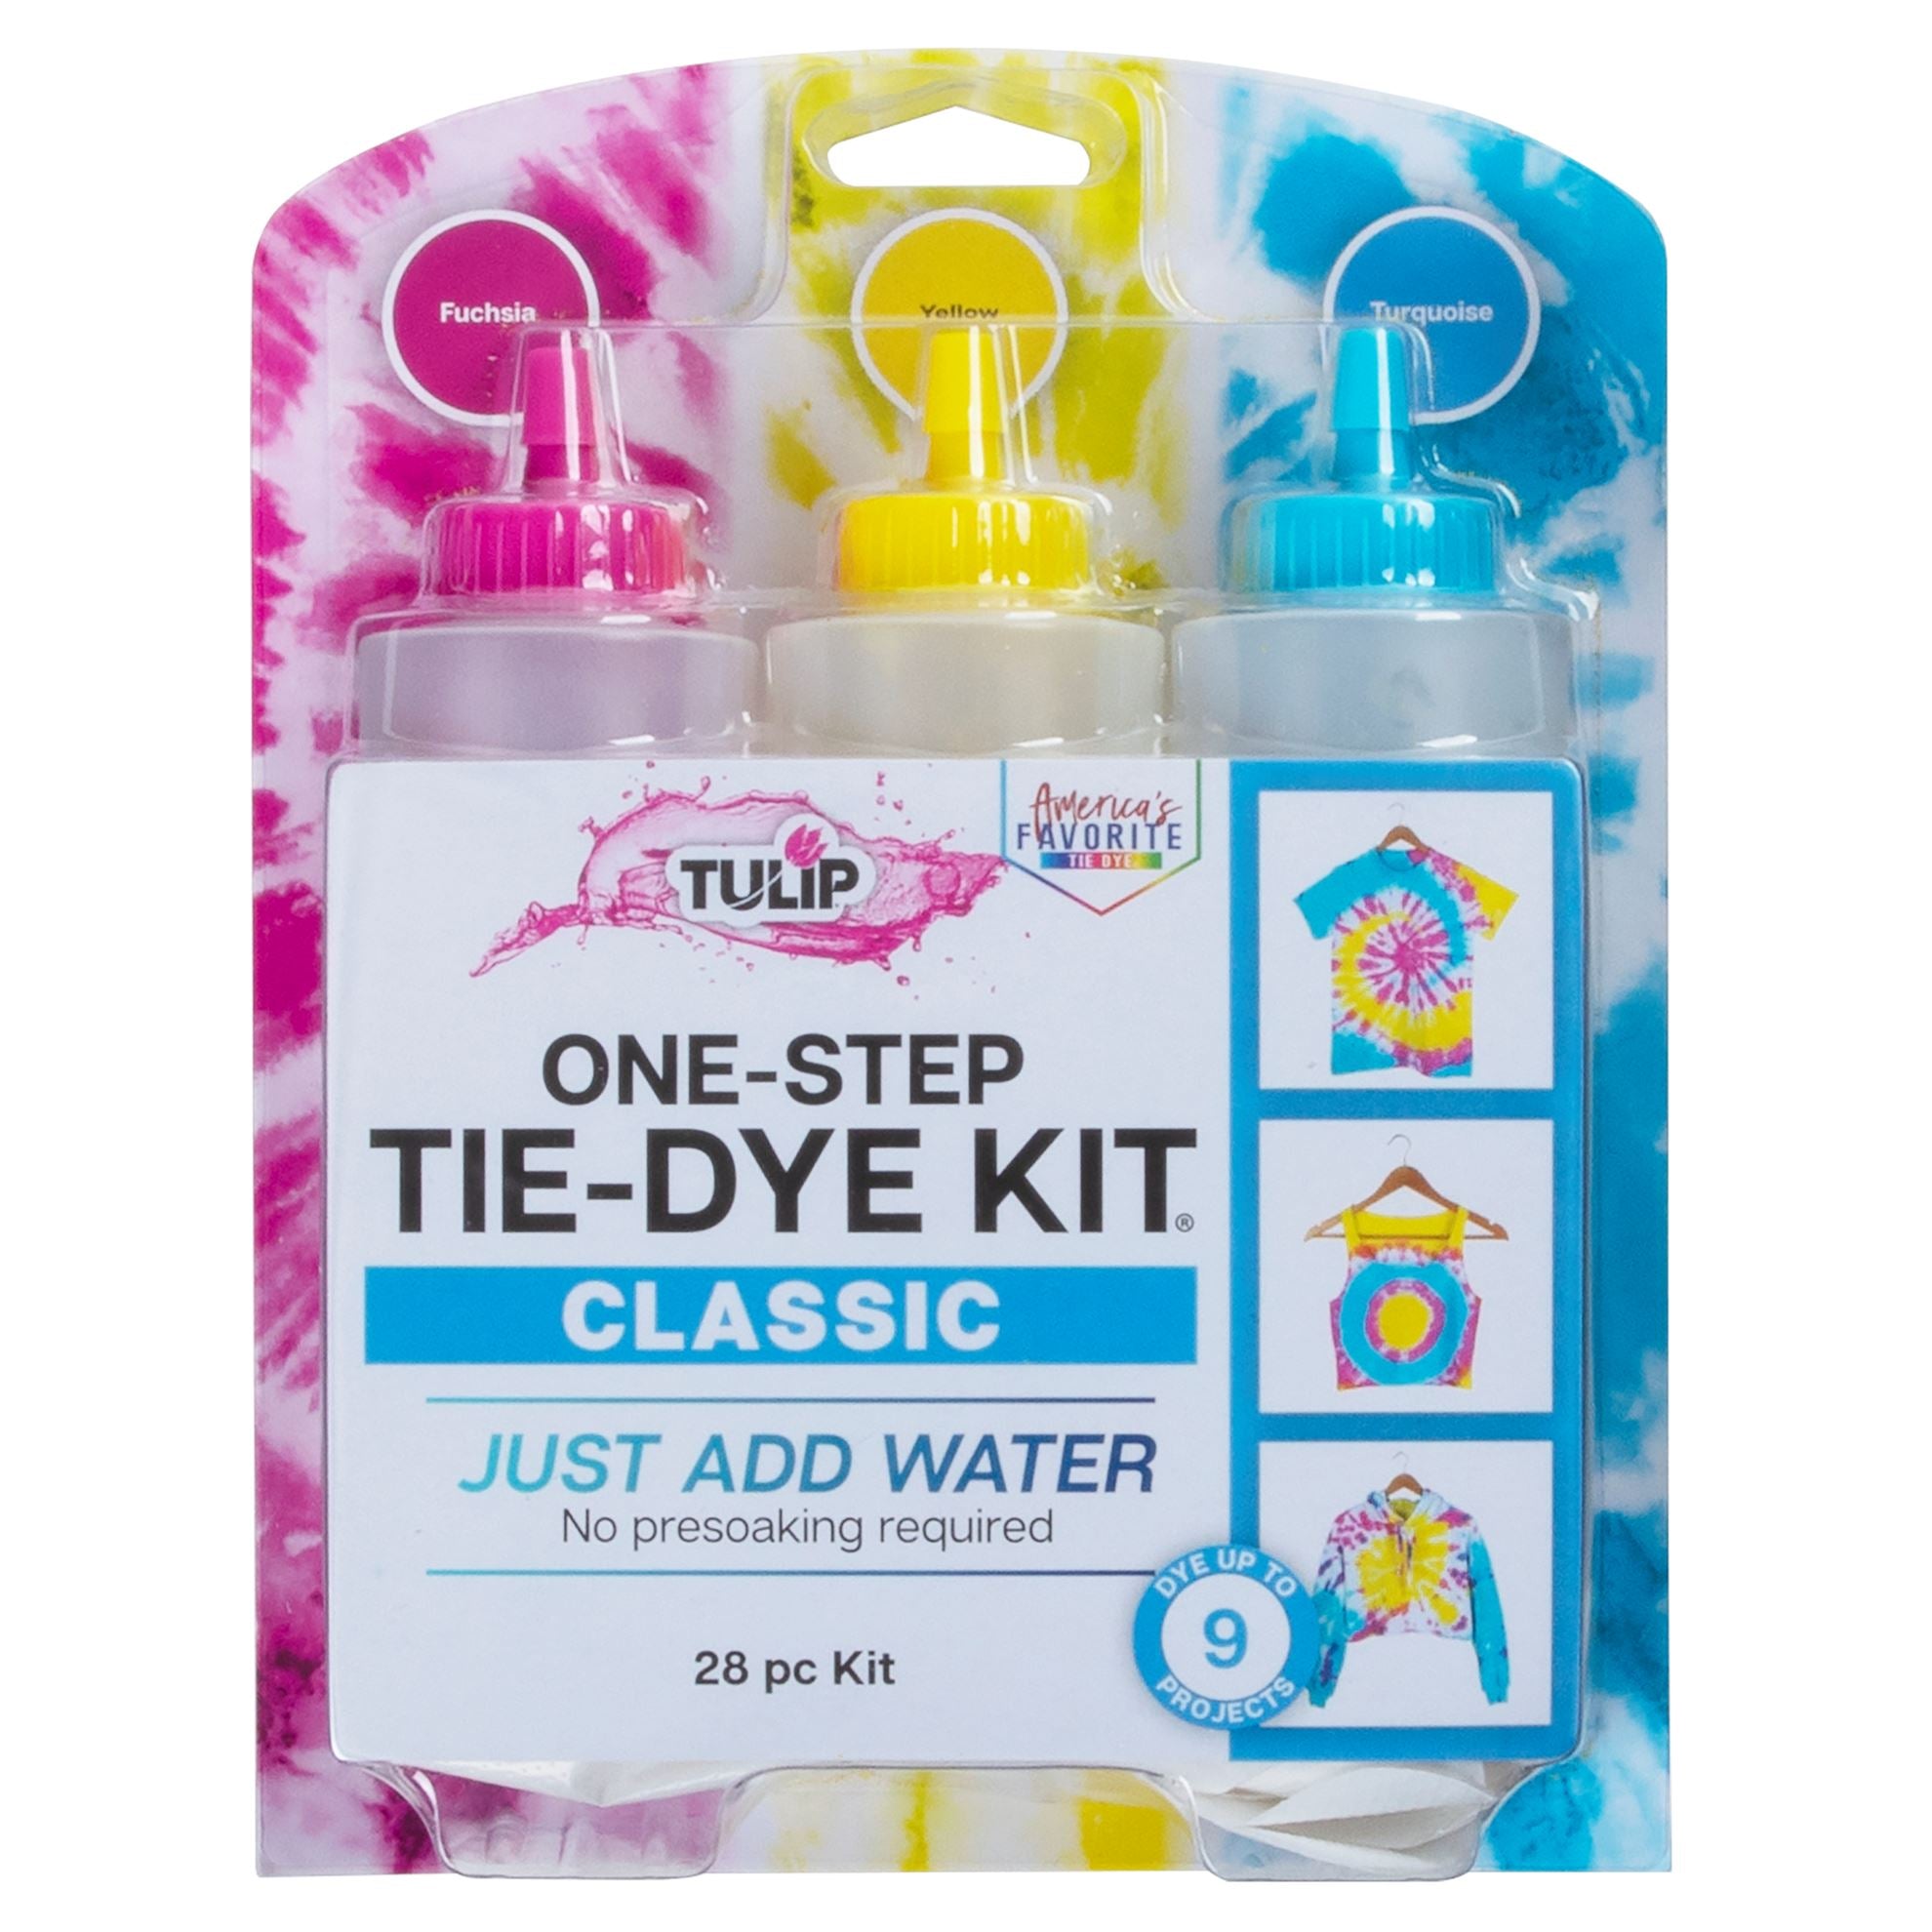 Tulip One-Step Classic .42 oz Tie-Dye Kit